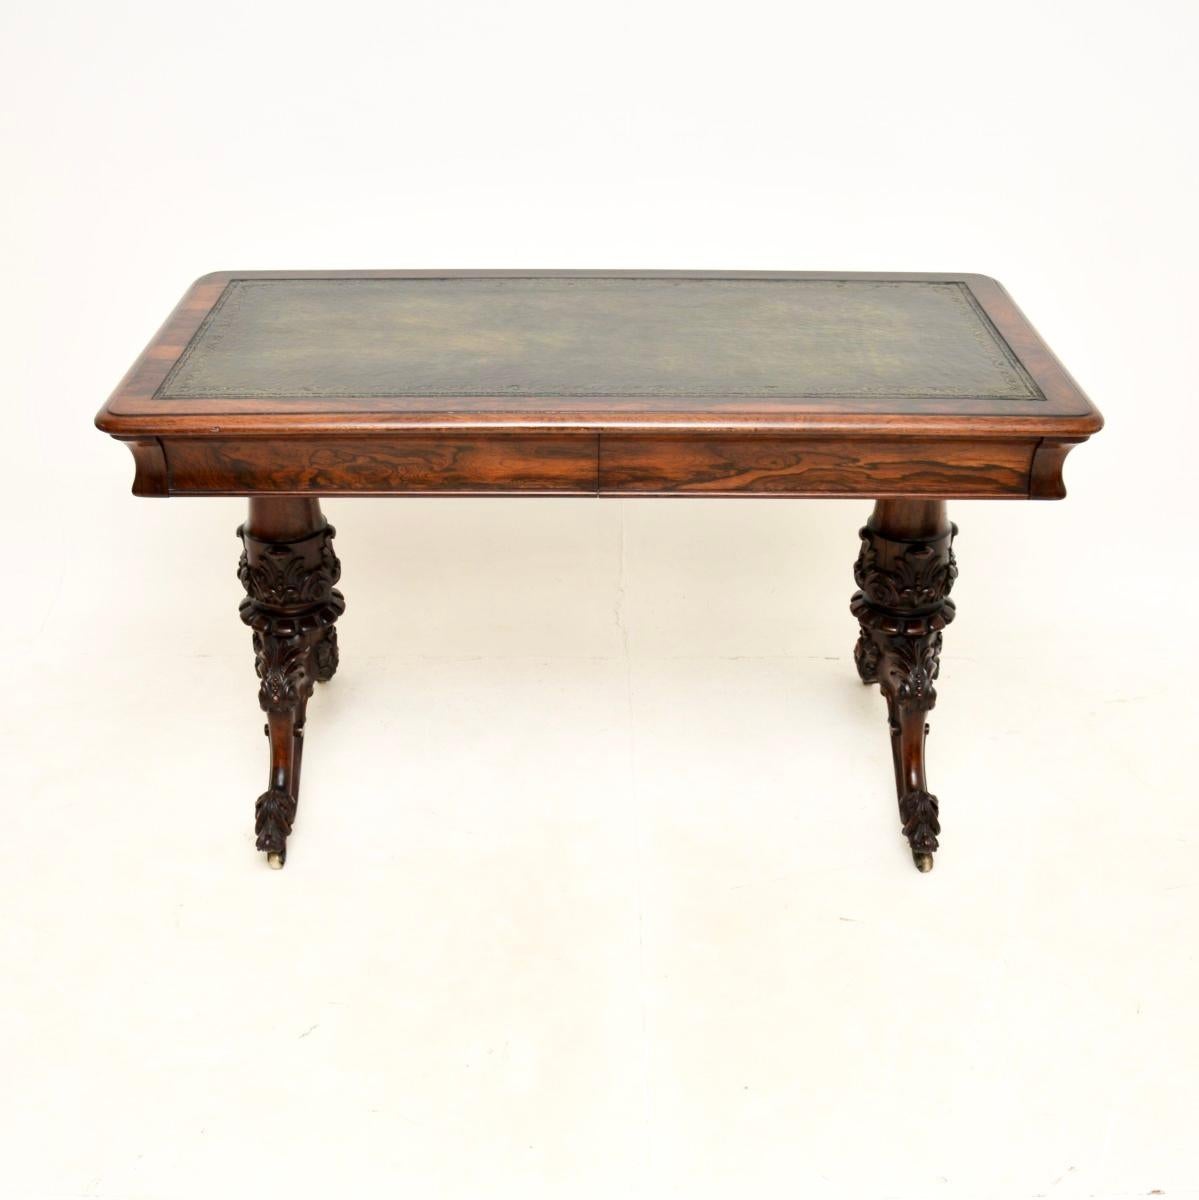 Un eccezionale tavolo da scrittura / scrivania di William IV. Questo modello è stato realizzato in Inghilterra e risale al periodo 1830-1840 circa.

È di altissima qualità e si regge su gambe robuste con intagli assolutamente straordinari e rotelle